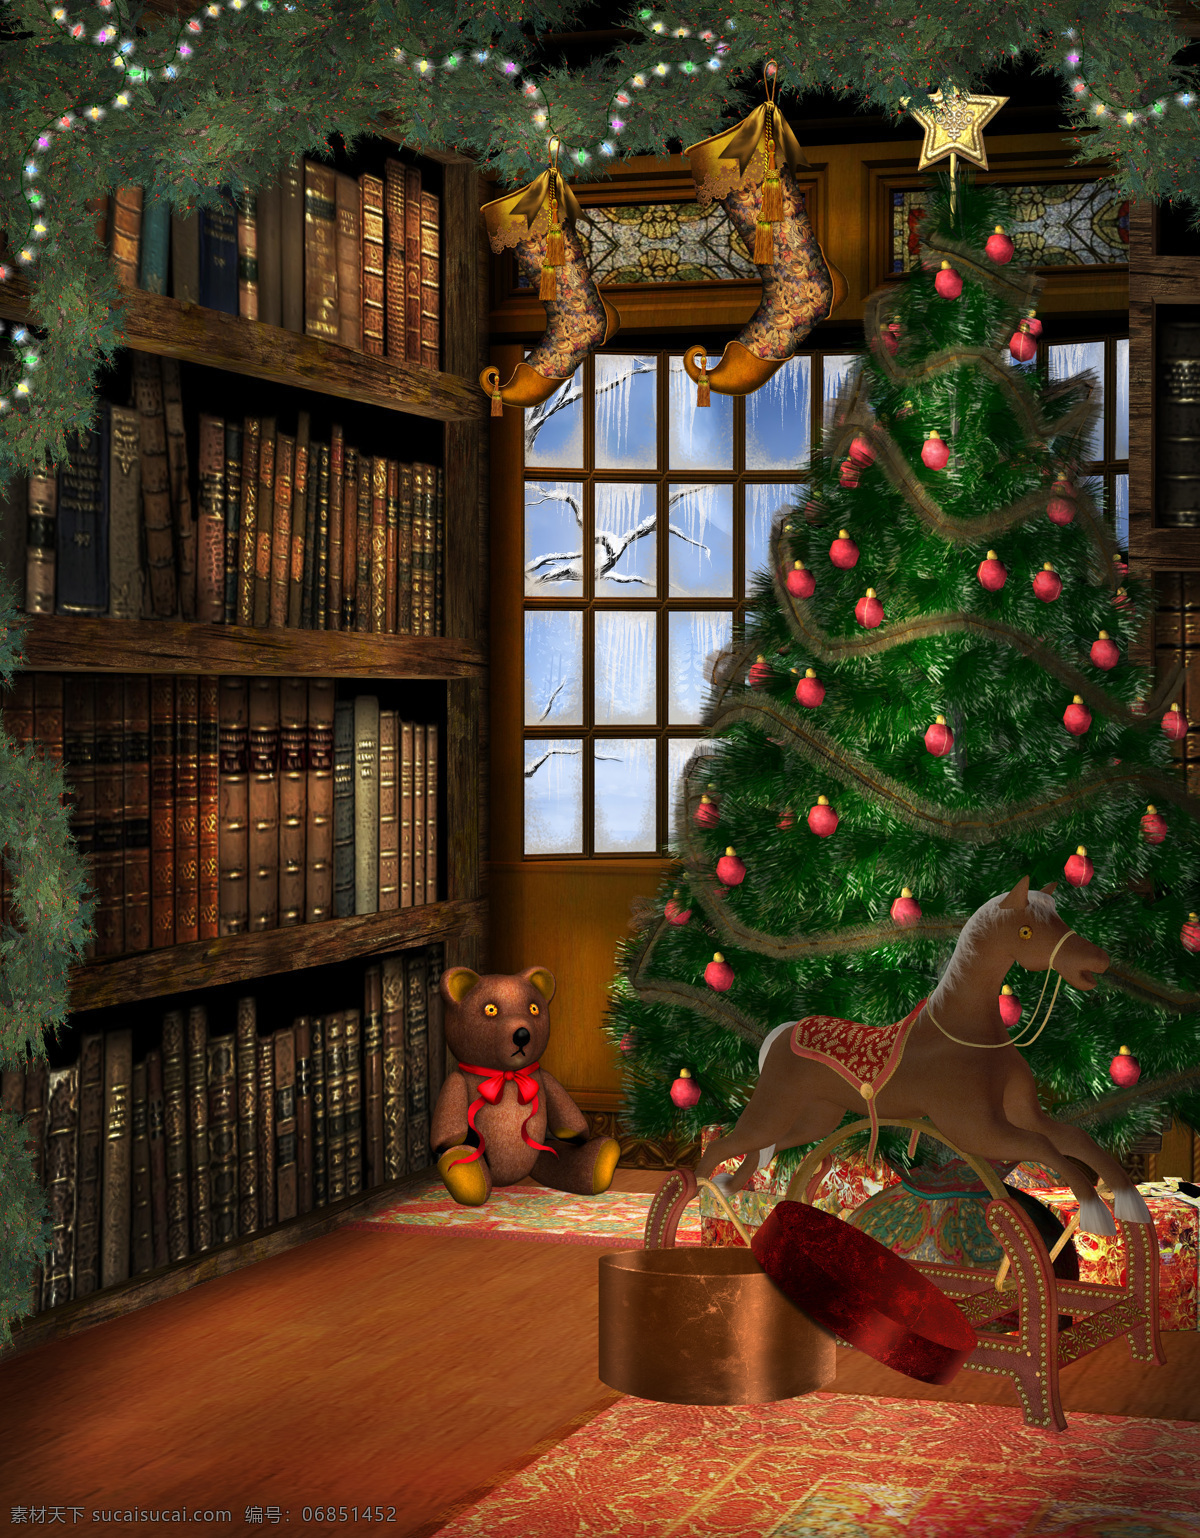 动漫动画 风景漫画 梦幻 圣诞背景 圣诞 背景 模板下载 圣诞节 圣诞树 设计素材 圣诞玩具 童话背景 相片模板 童话风格 psd源文件